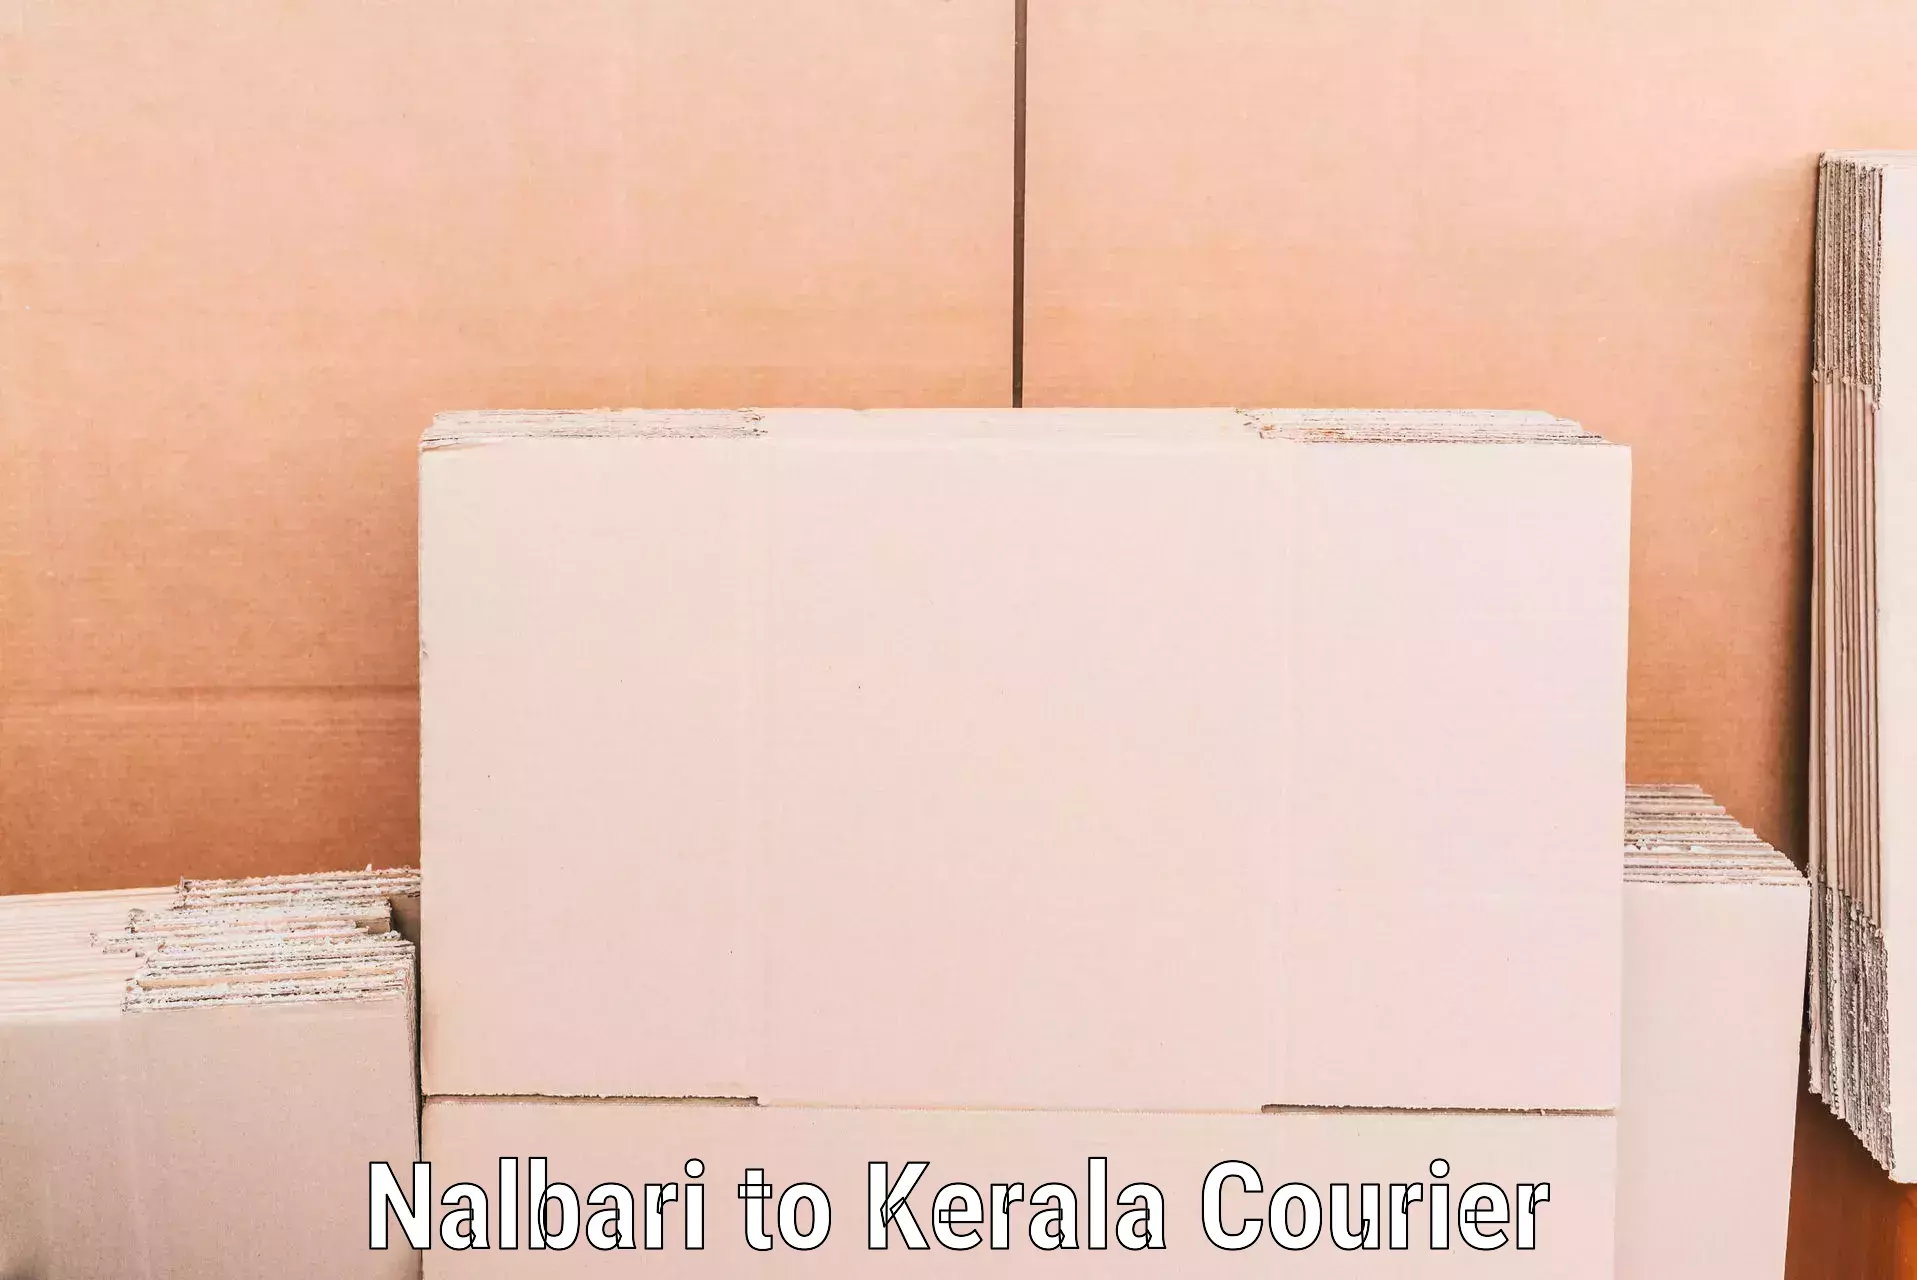 Professional packing and transport Nalbari to Trivandrum